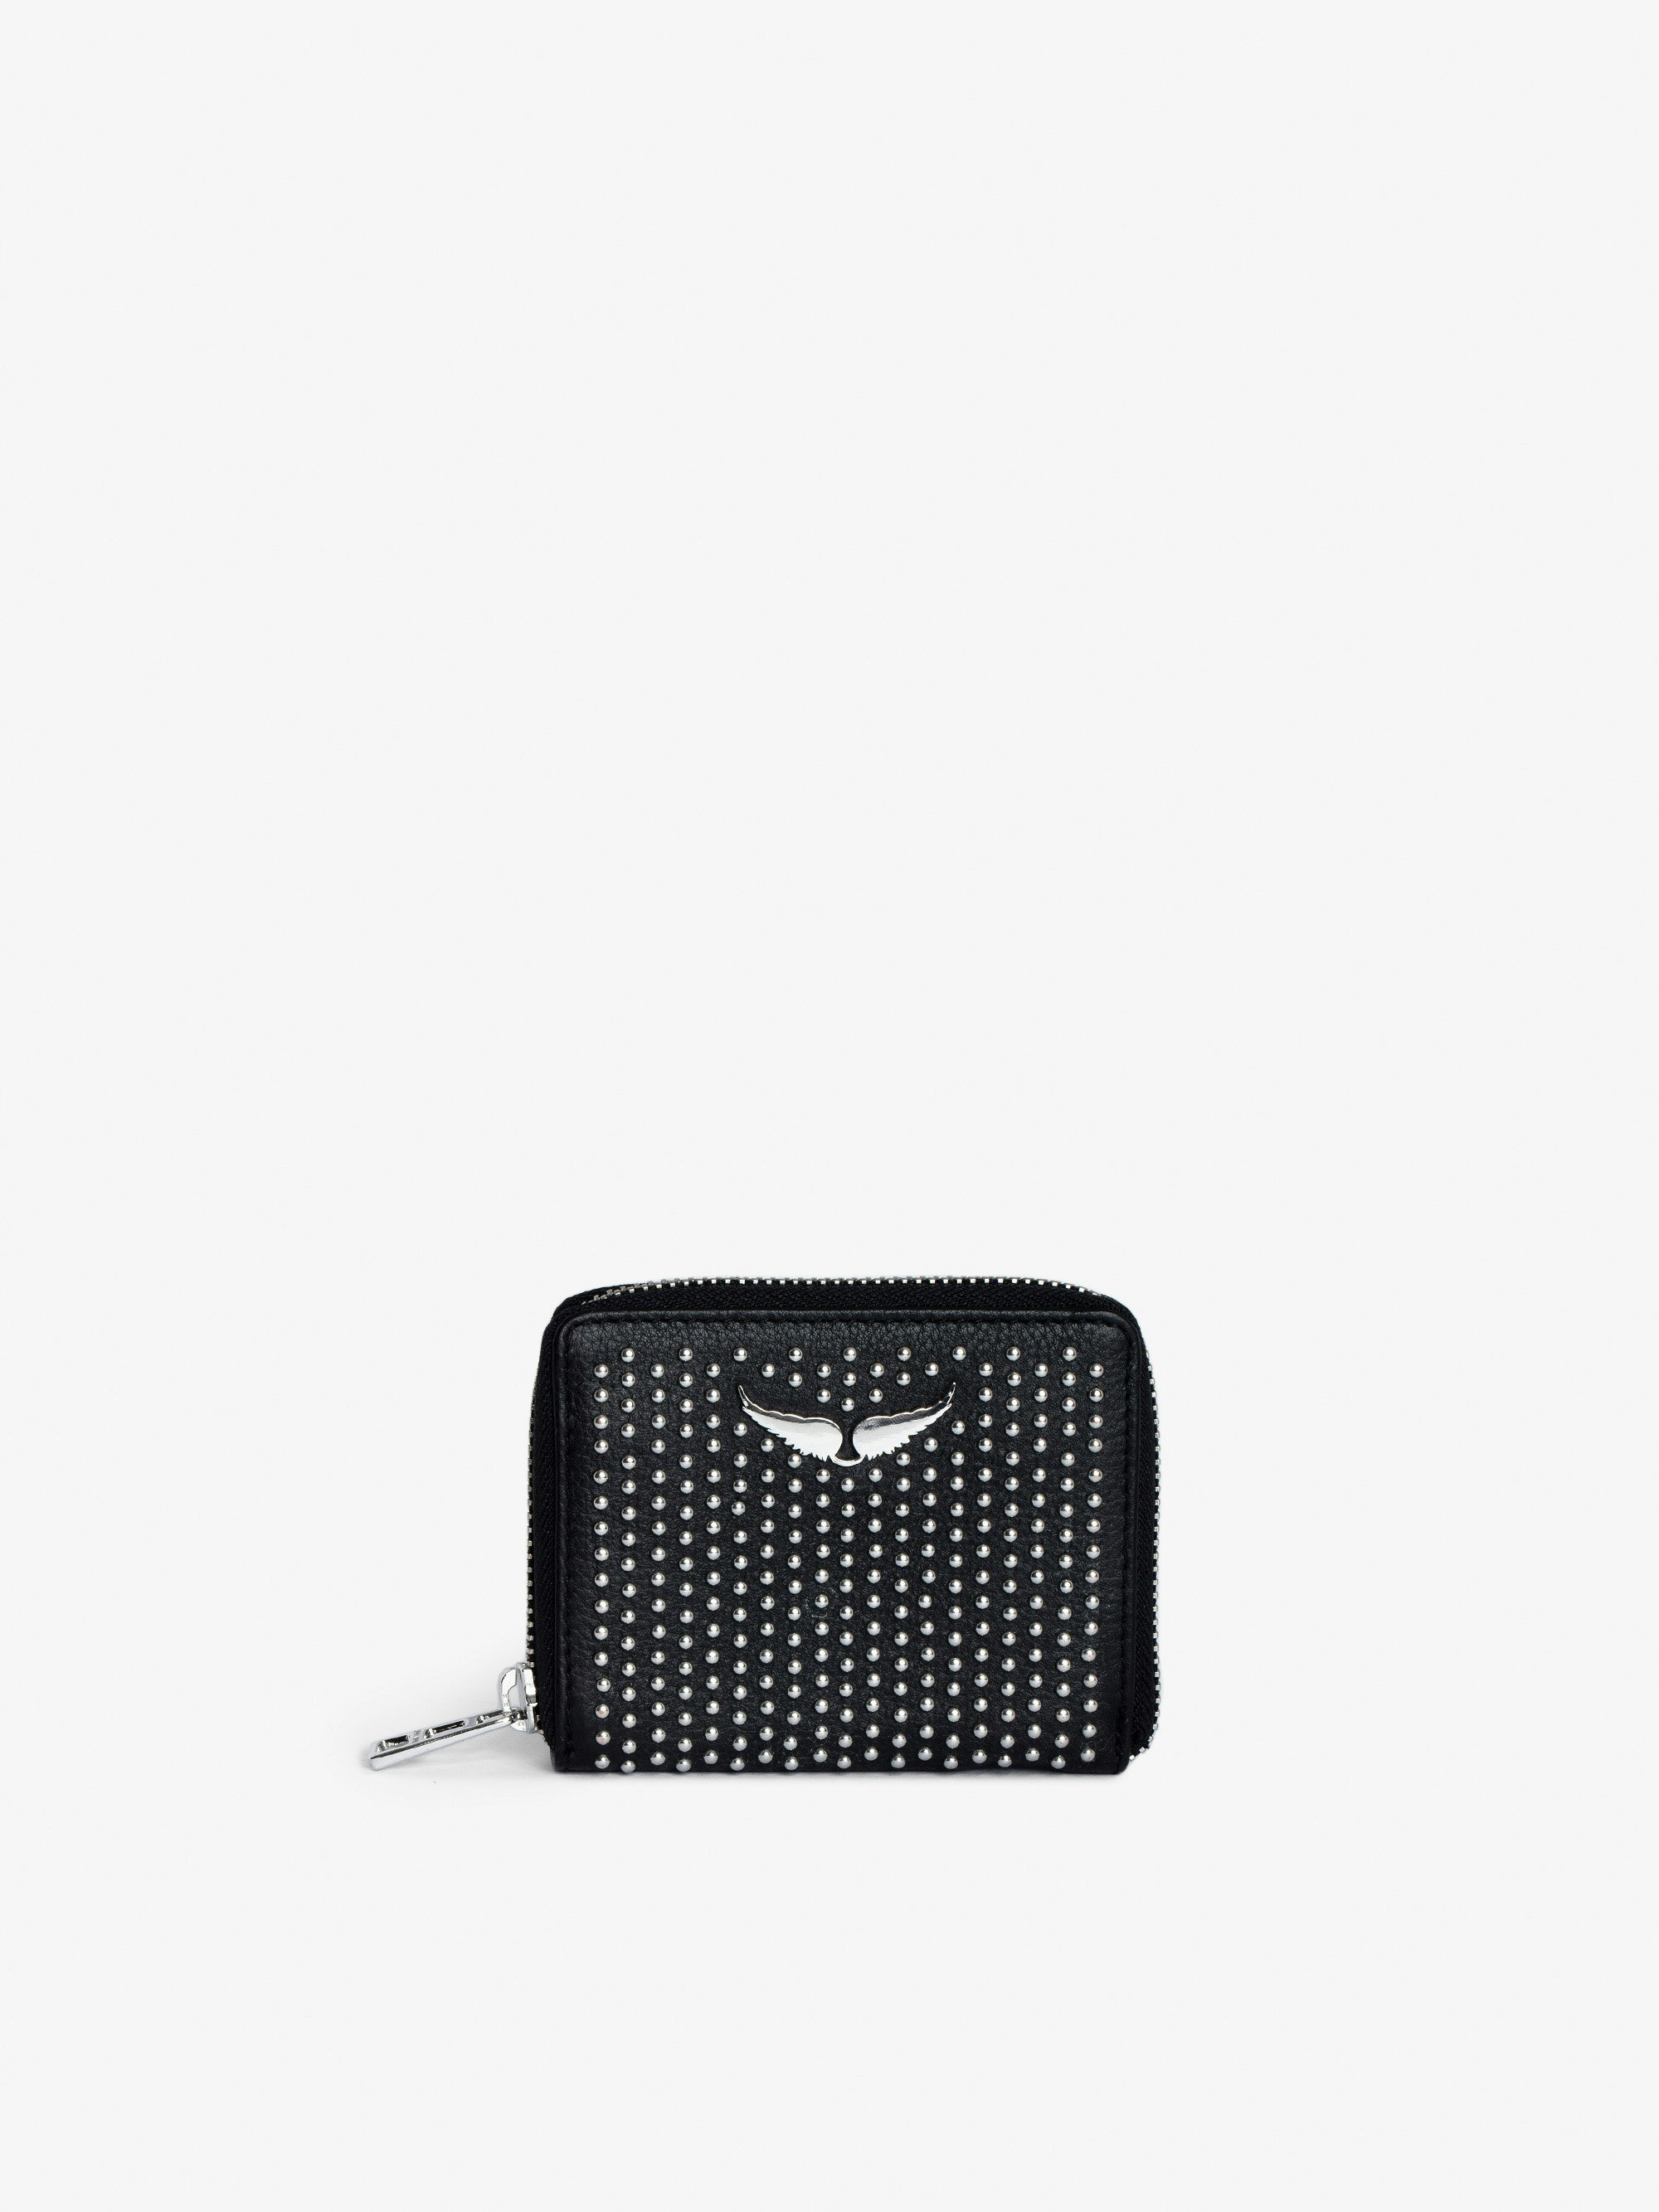 Portamonete Mini ZV Plumetis - Portafoglio in pelle granulata nero con borchie e charm ali da donna.